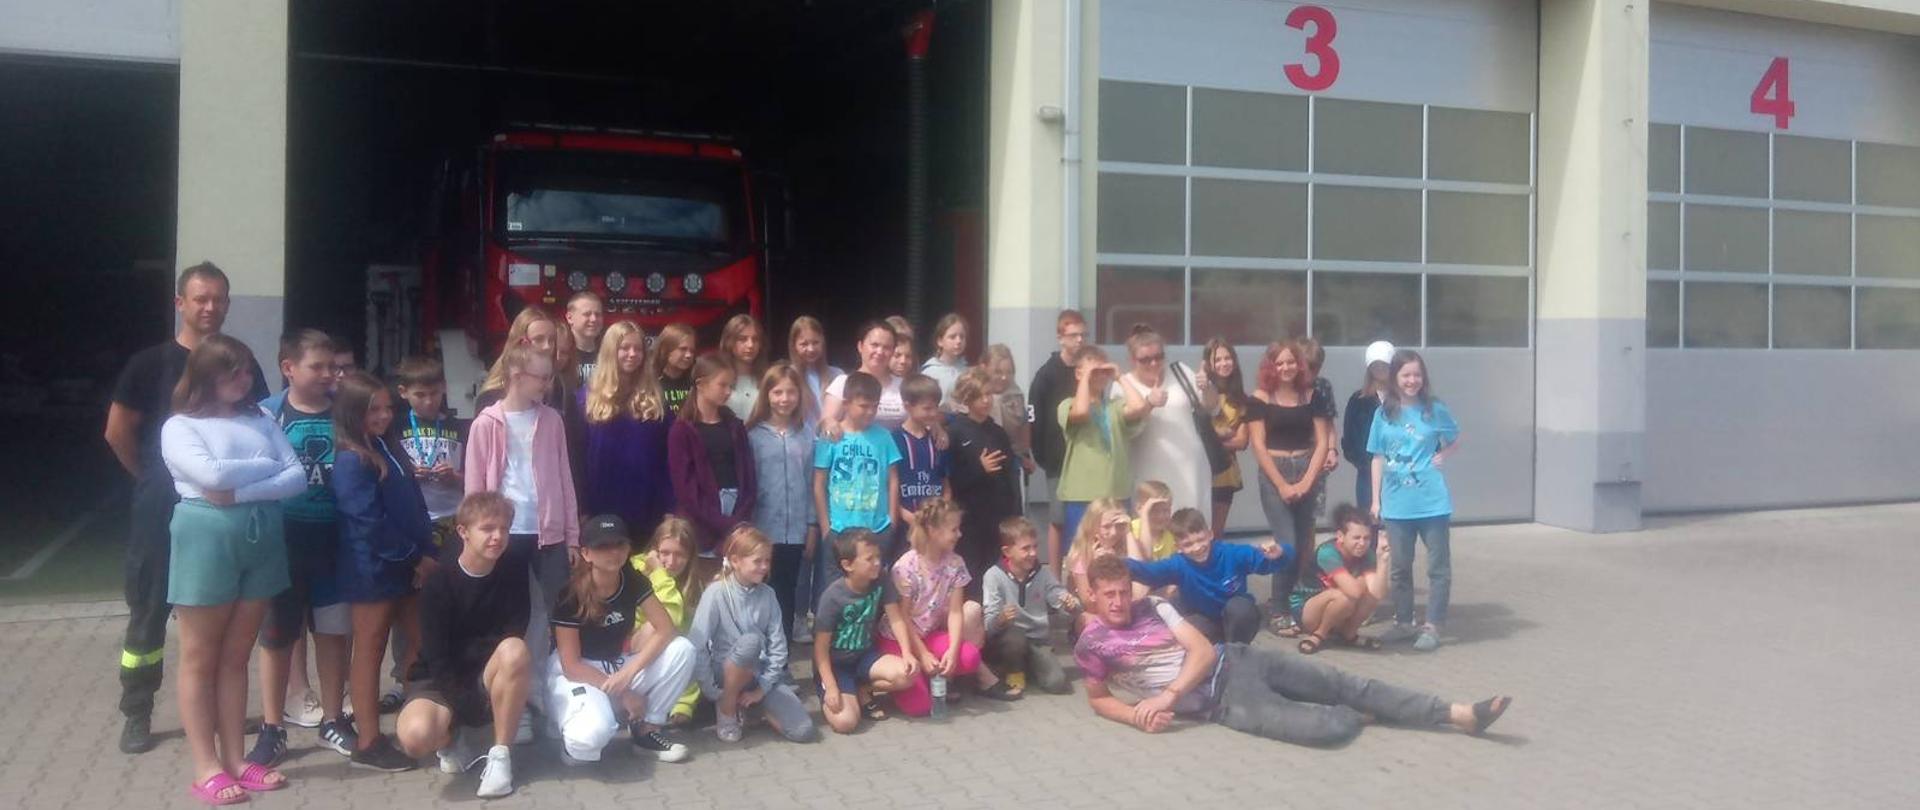 Wycieczka uczestników kolonii do KP PSP w Sokołowie Podlaskim - na zdjęciu strażacy i dzieci z kolonii na placu przed strażnicą na zbiórce przed garażem.